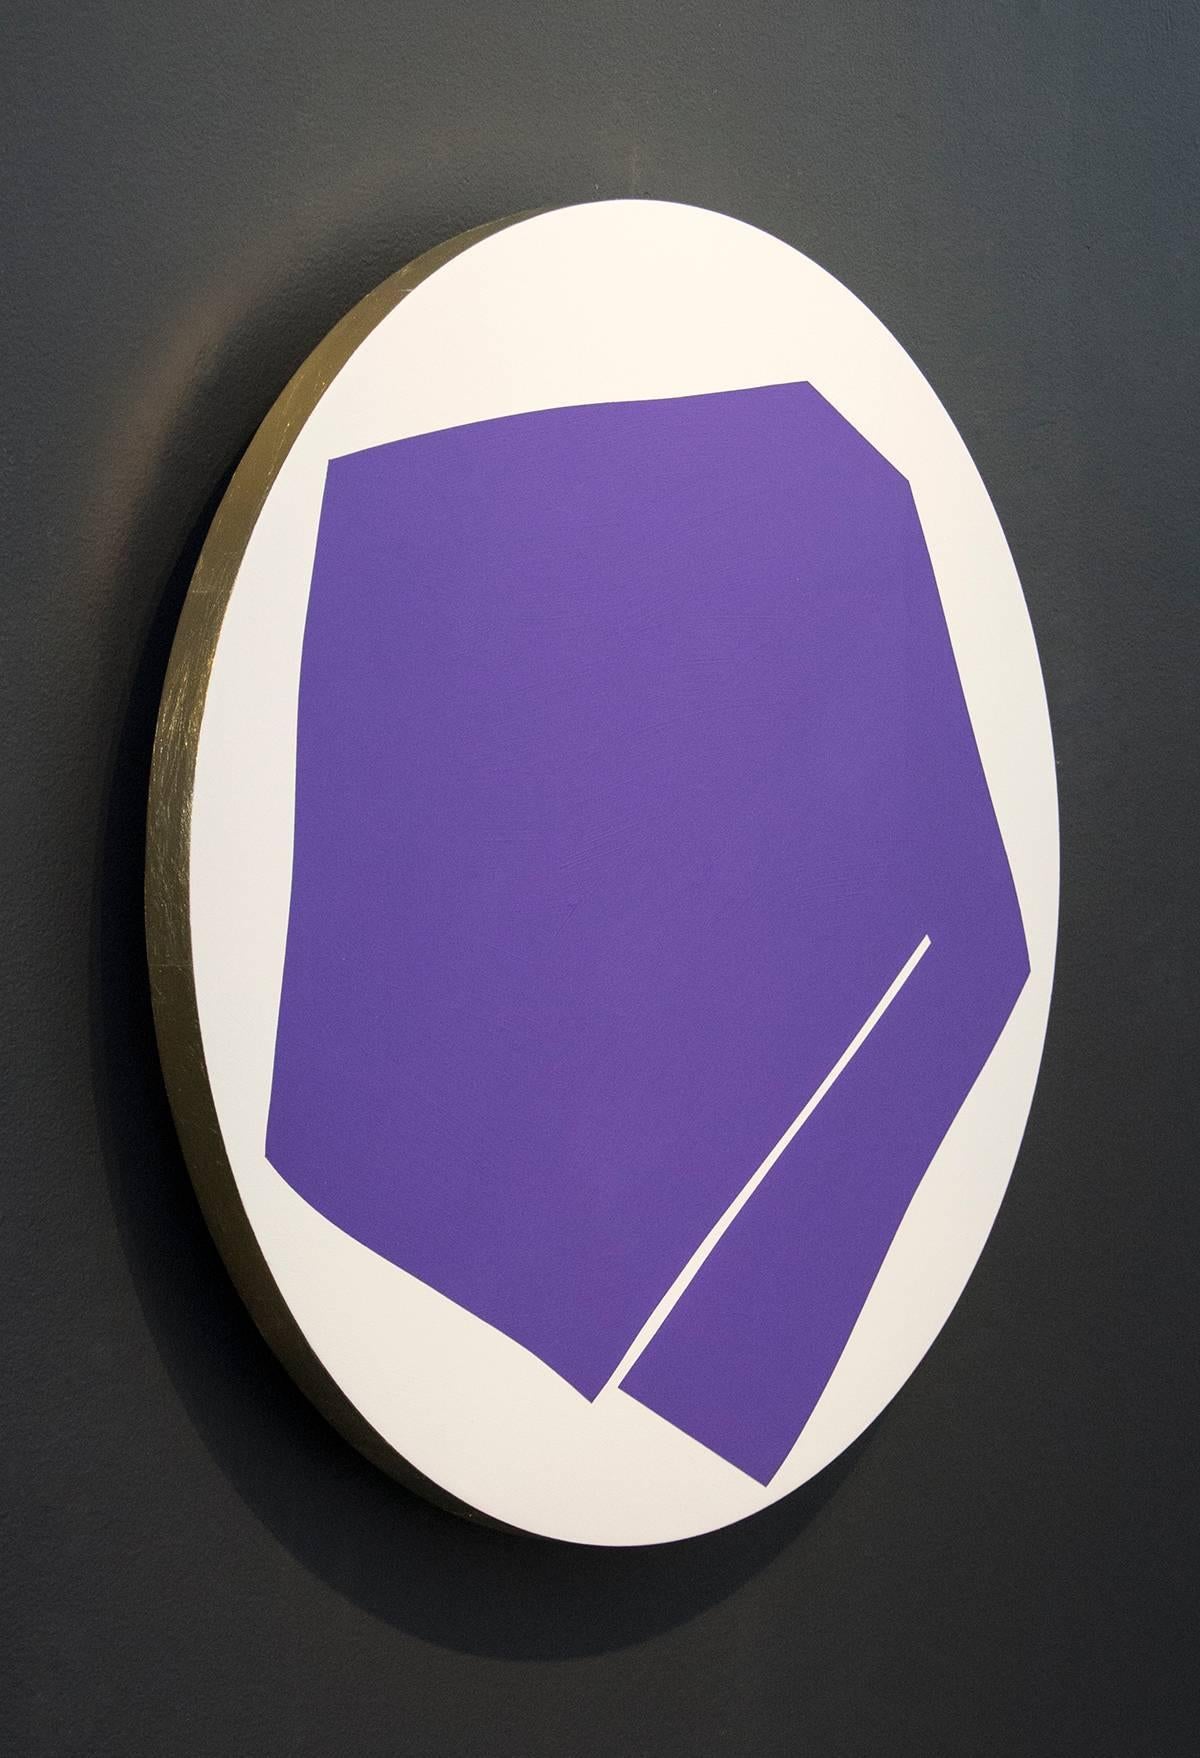 Violet rond avec 1 ligne - bord coloré en feuille d'or, acrylique tondo sur panneau - Abstrait Painting par Aron Hill